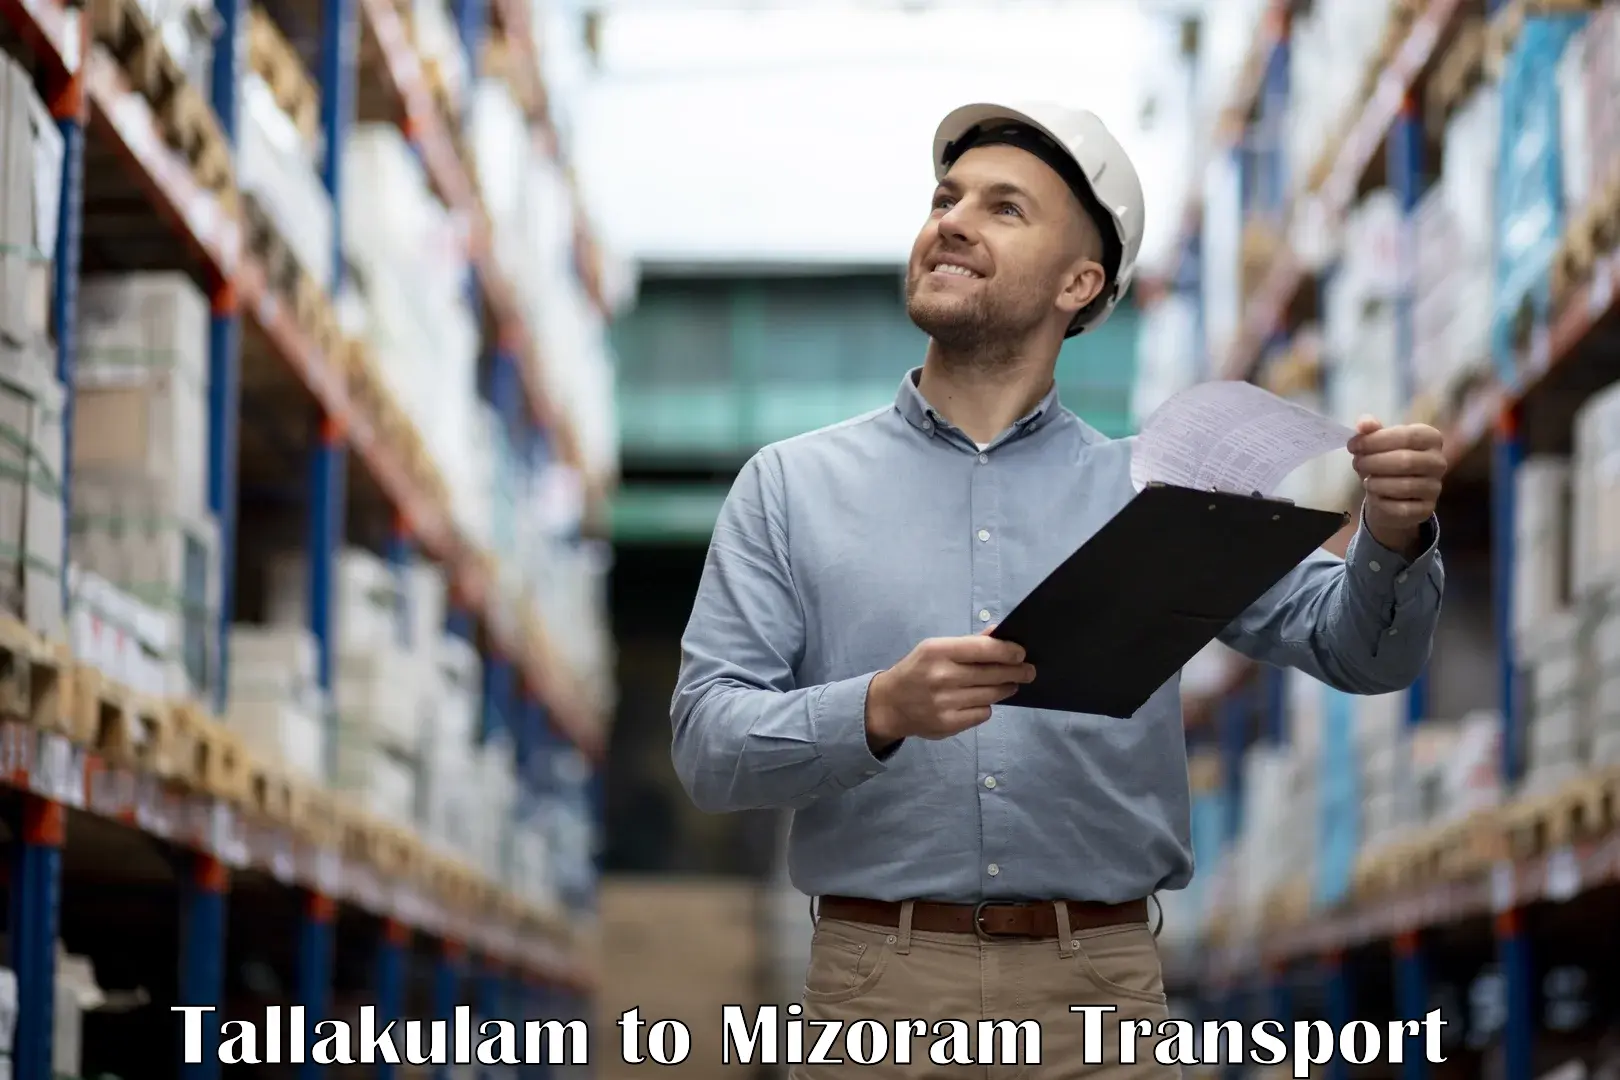 Delivery service Tallakulam to Aizawl